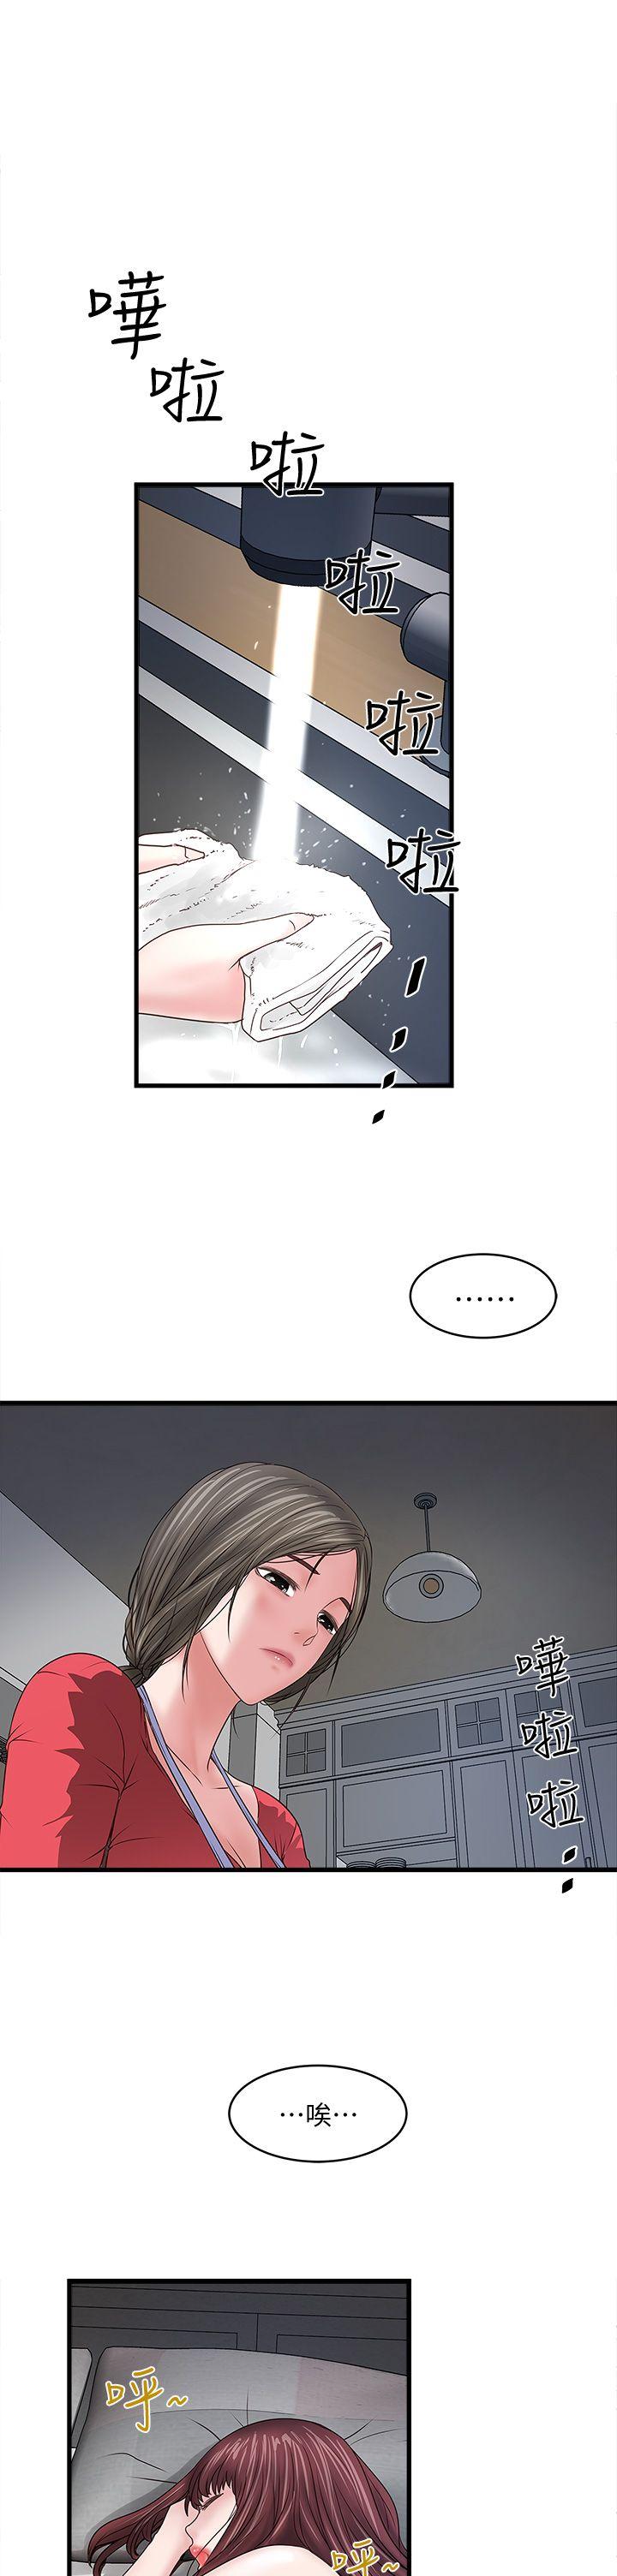 韩国污漫画 下女,初希 第6话-重振雄风 19